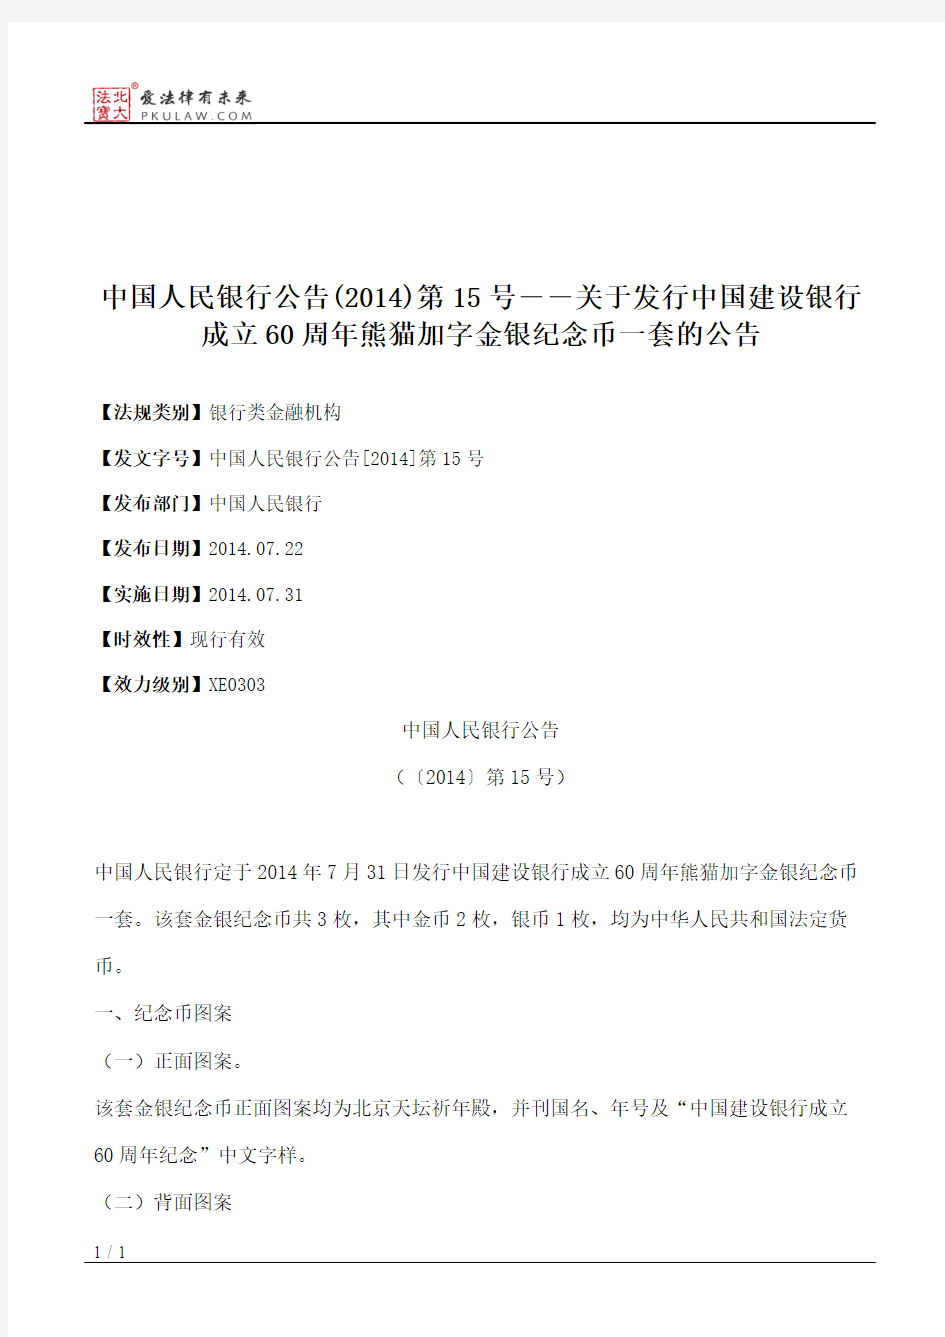 中国人民银行公告(2014)第15号――关于发行中国建设银行成立60周年